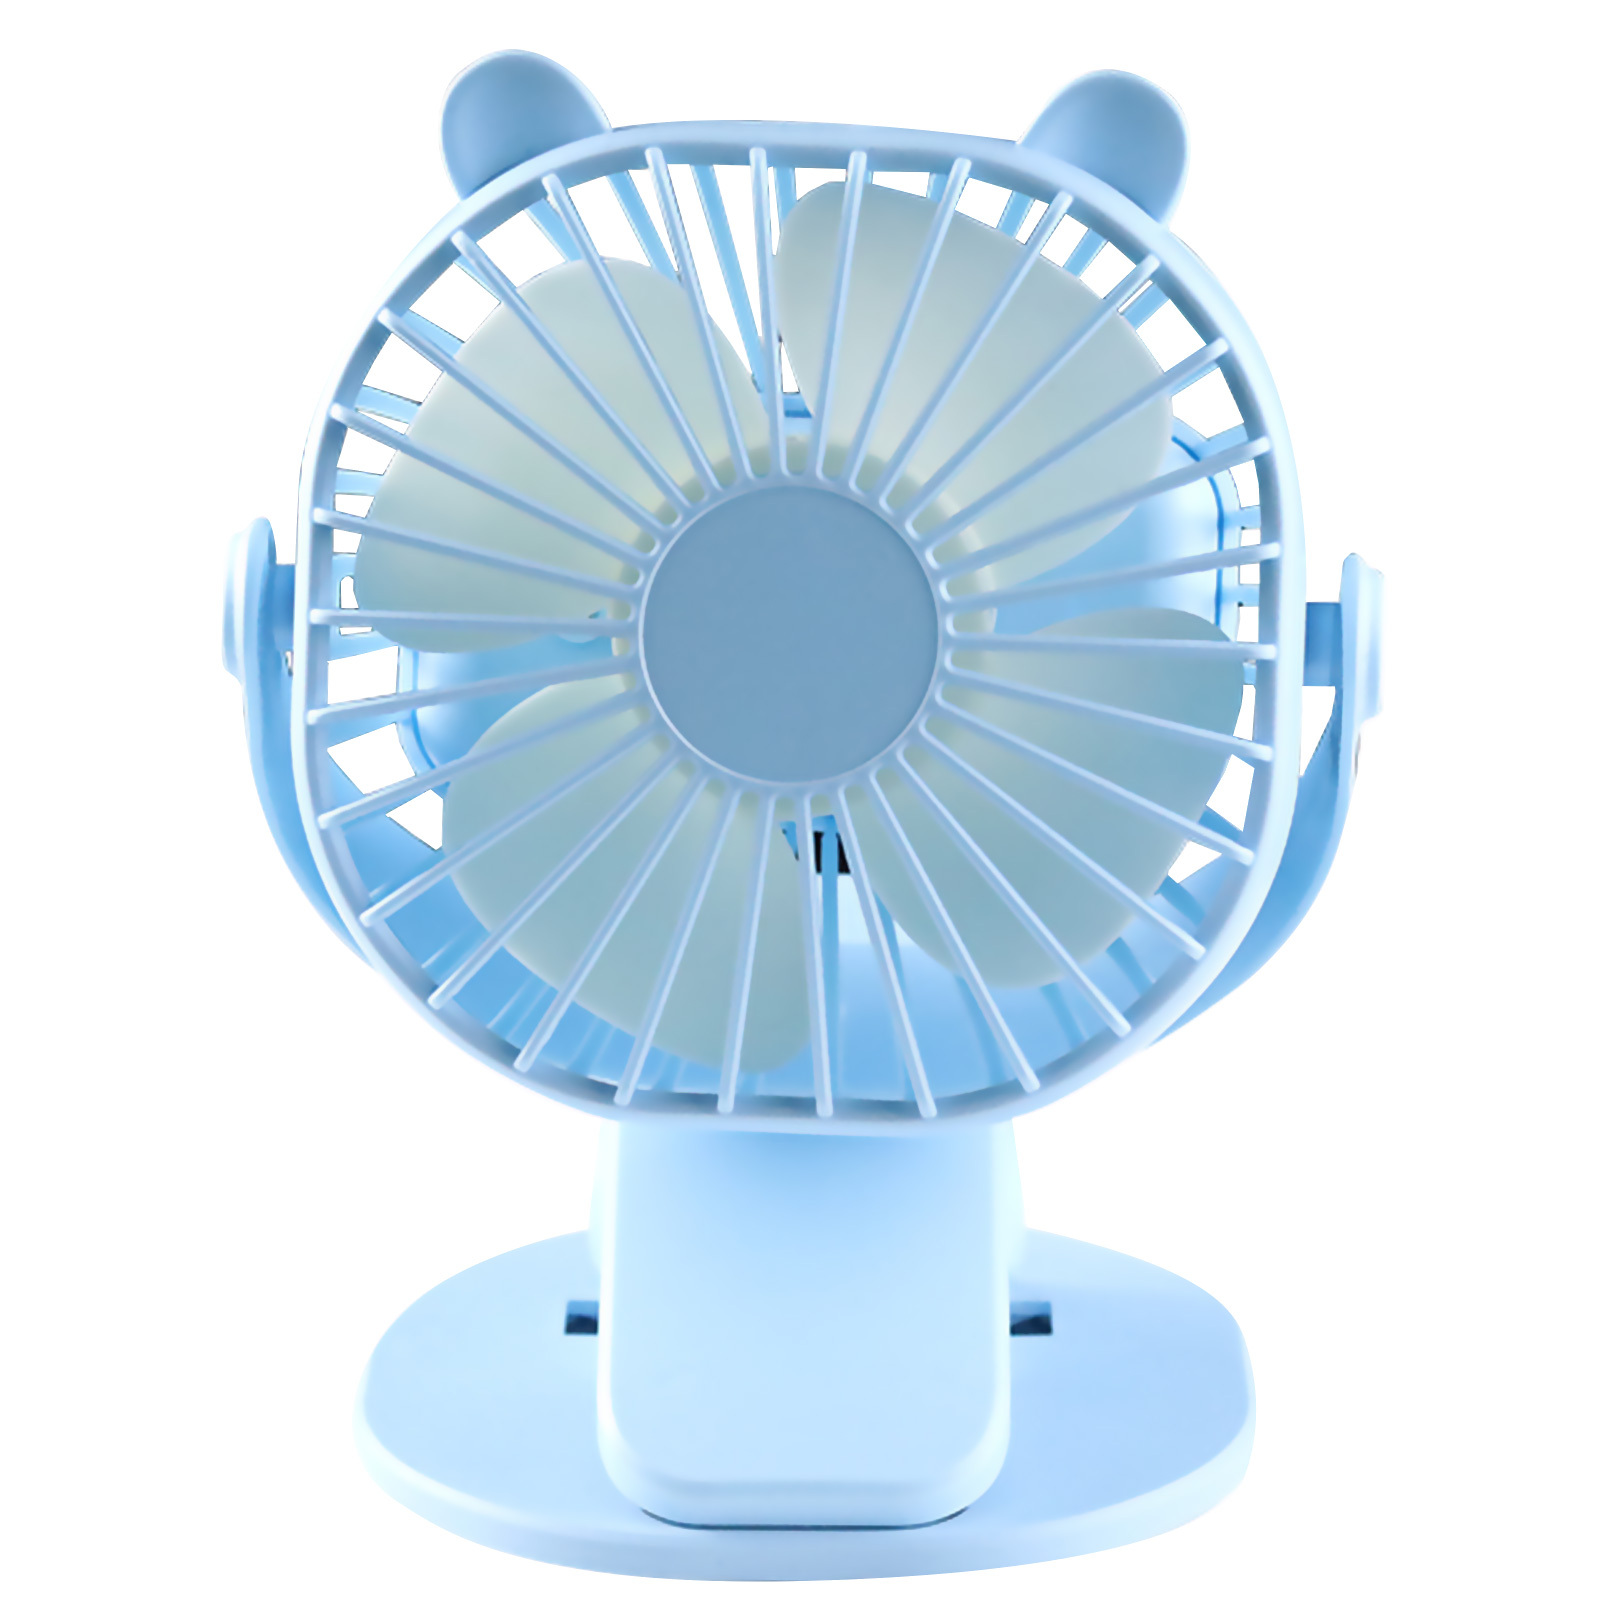 Simple desktop Fan ys2235. Ventilyator aeroplane desktop Fan. Купить вентилятор интернет